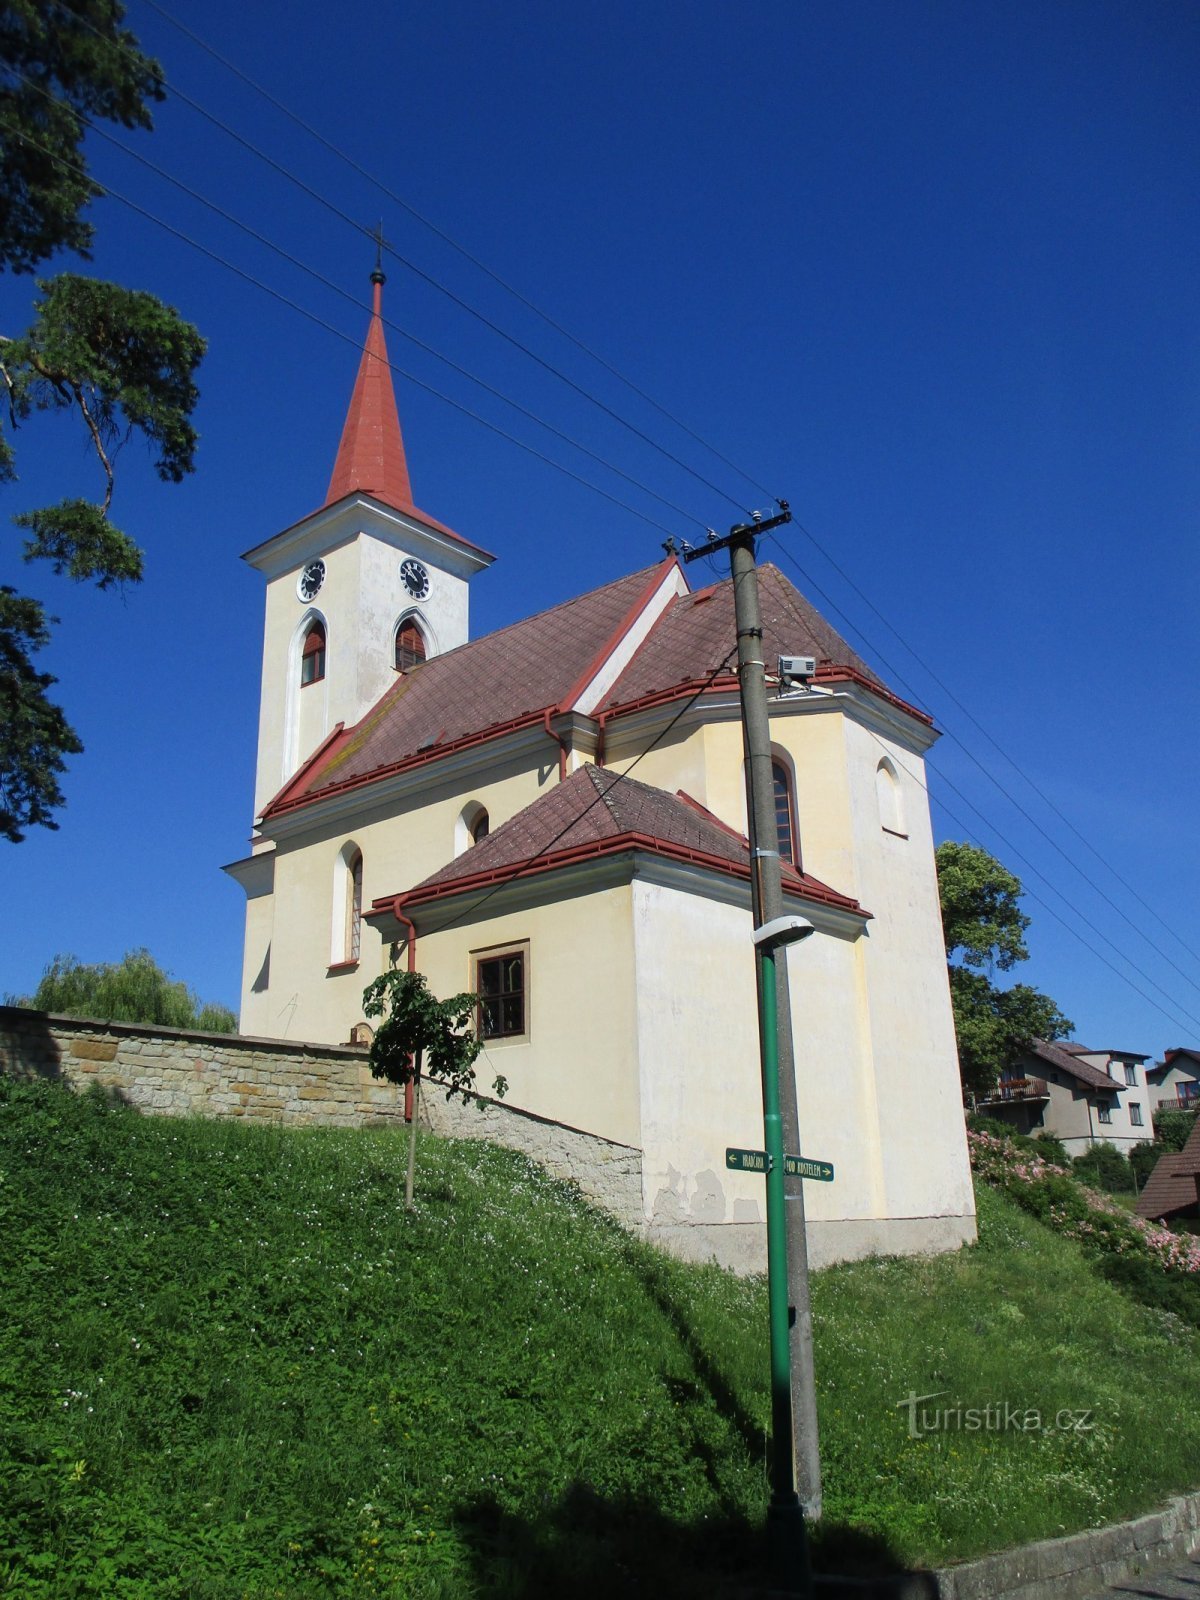 Nhà thờ Biến hình (Velichovky)